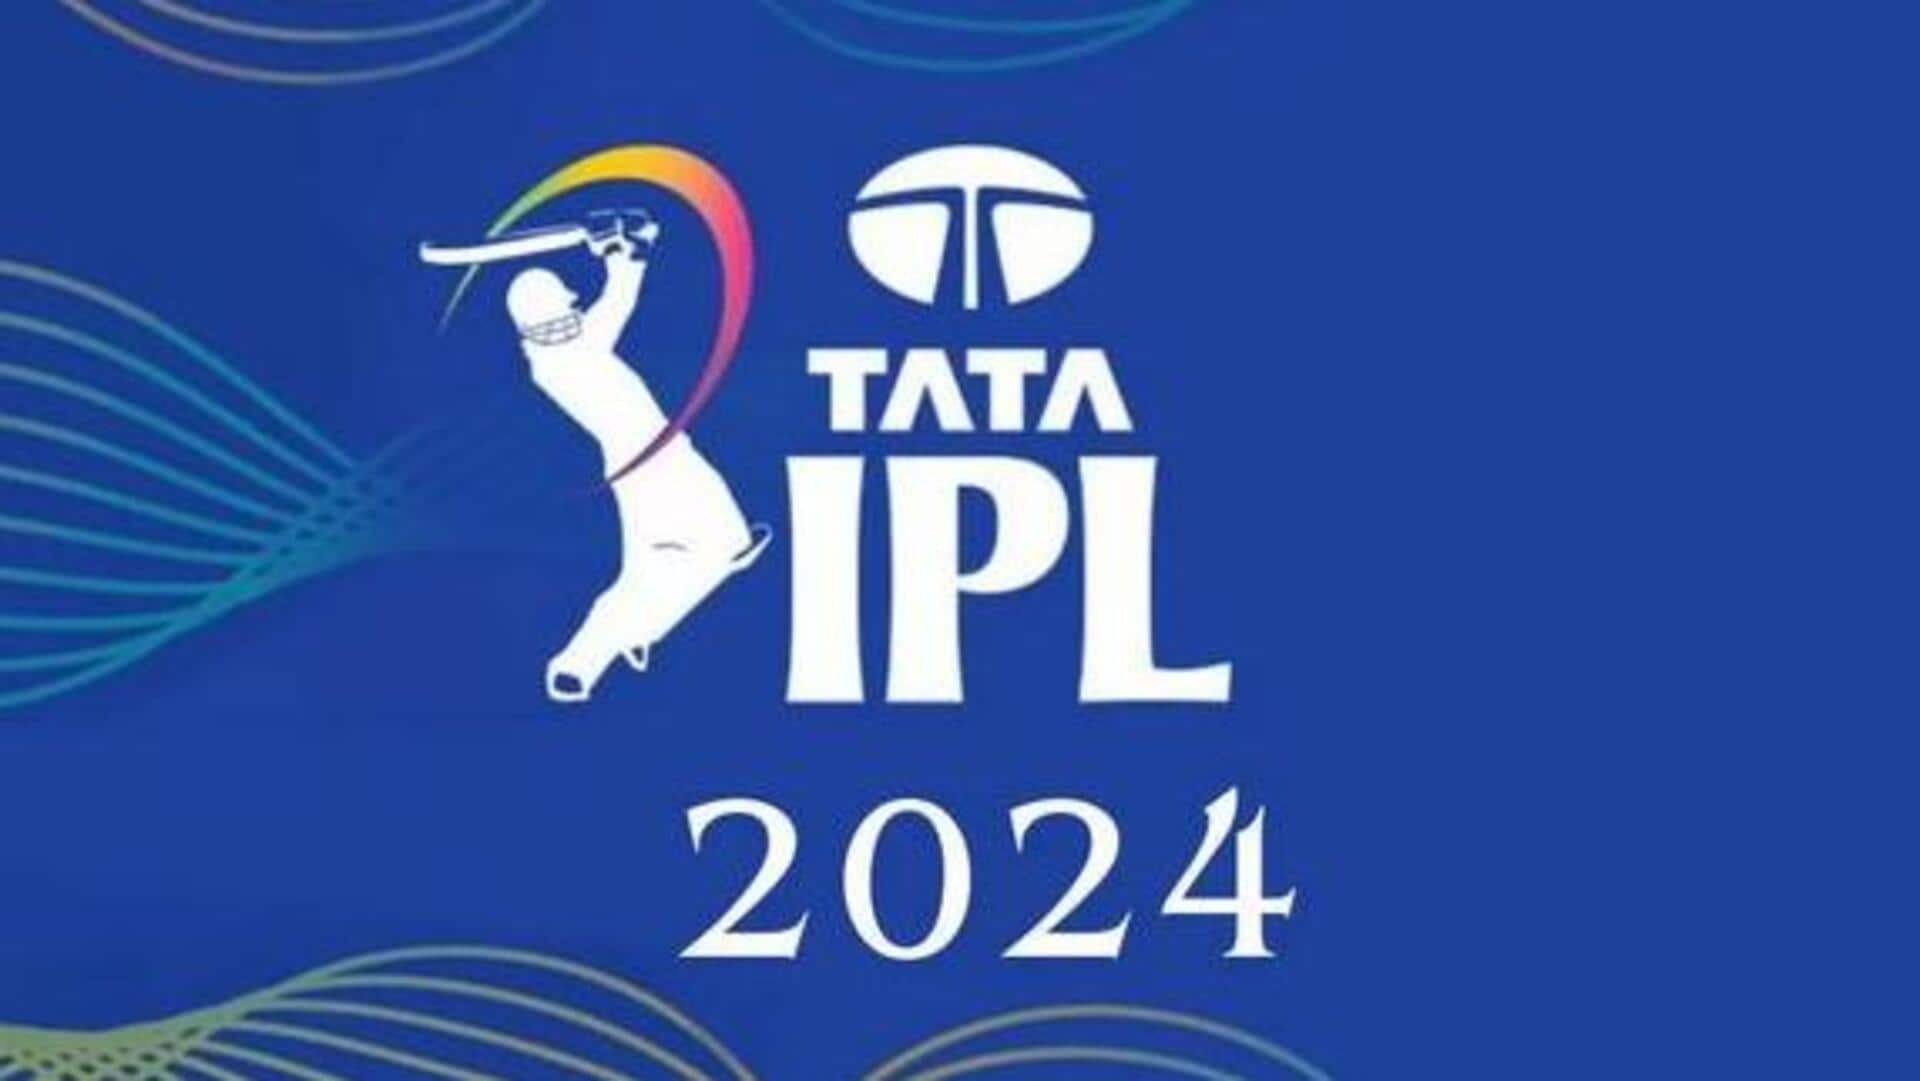 IPL 2024 : ఐపీఎల్‌లో నయా రూల్.. ఇక బ్యాటర్లకు కష్టాలు తప్పవు!